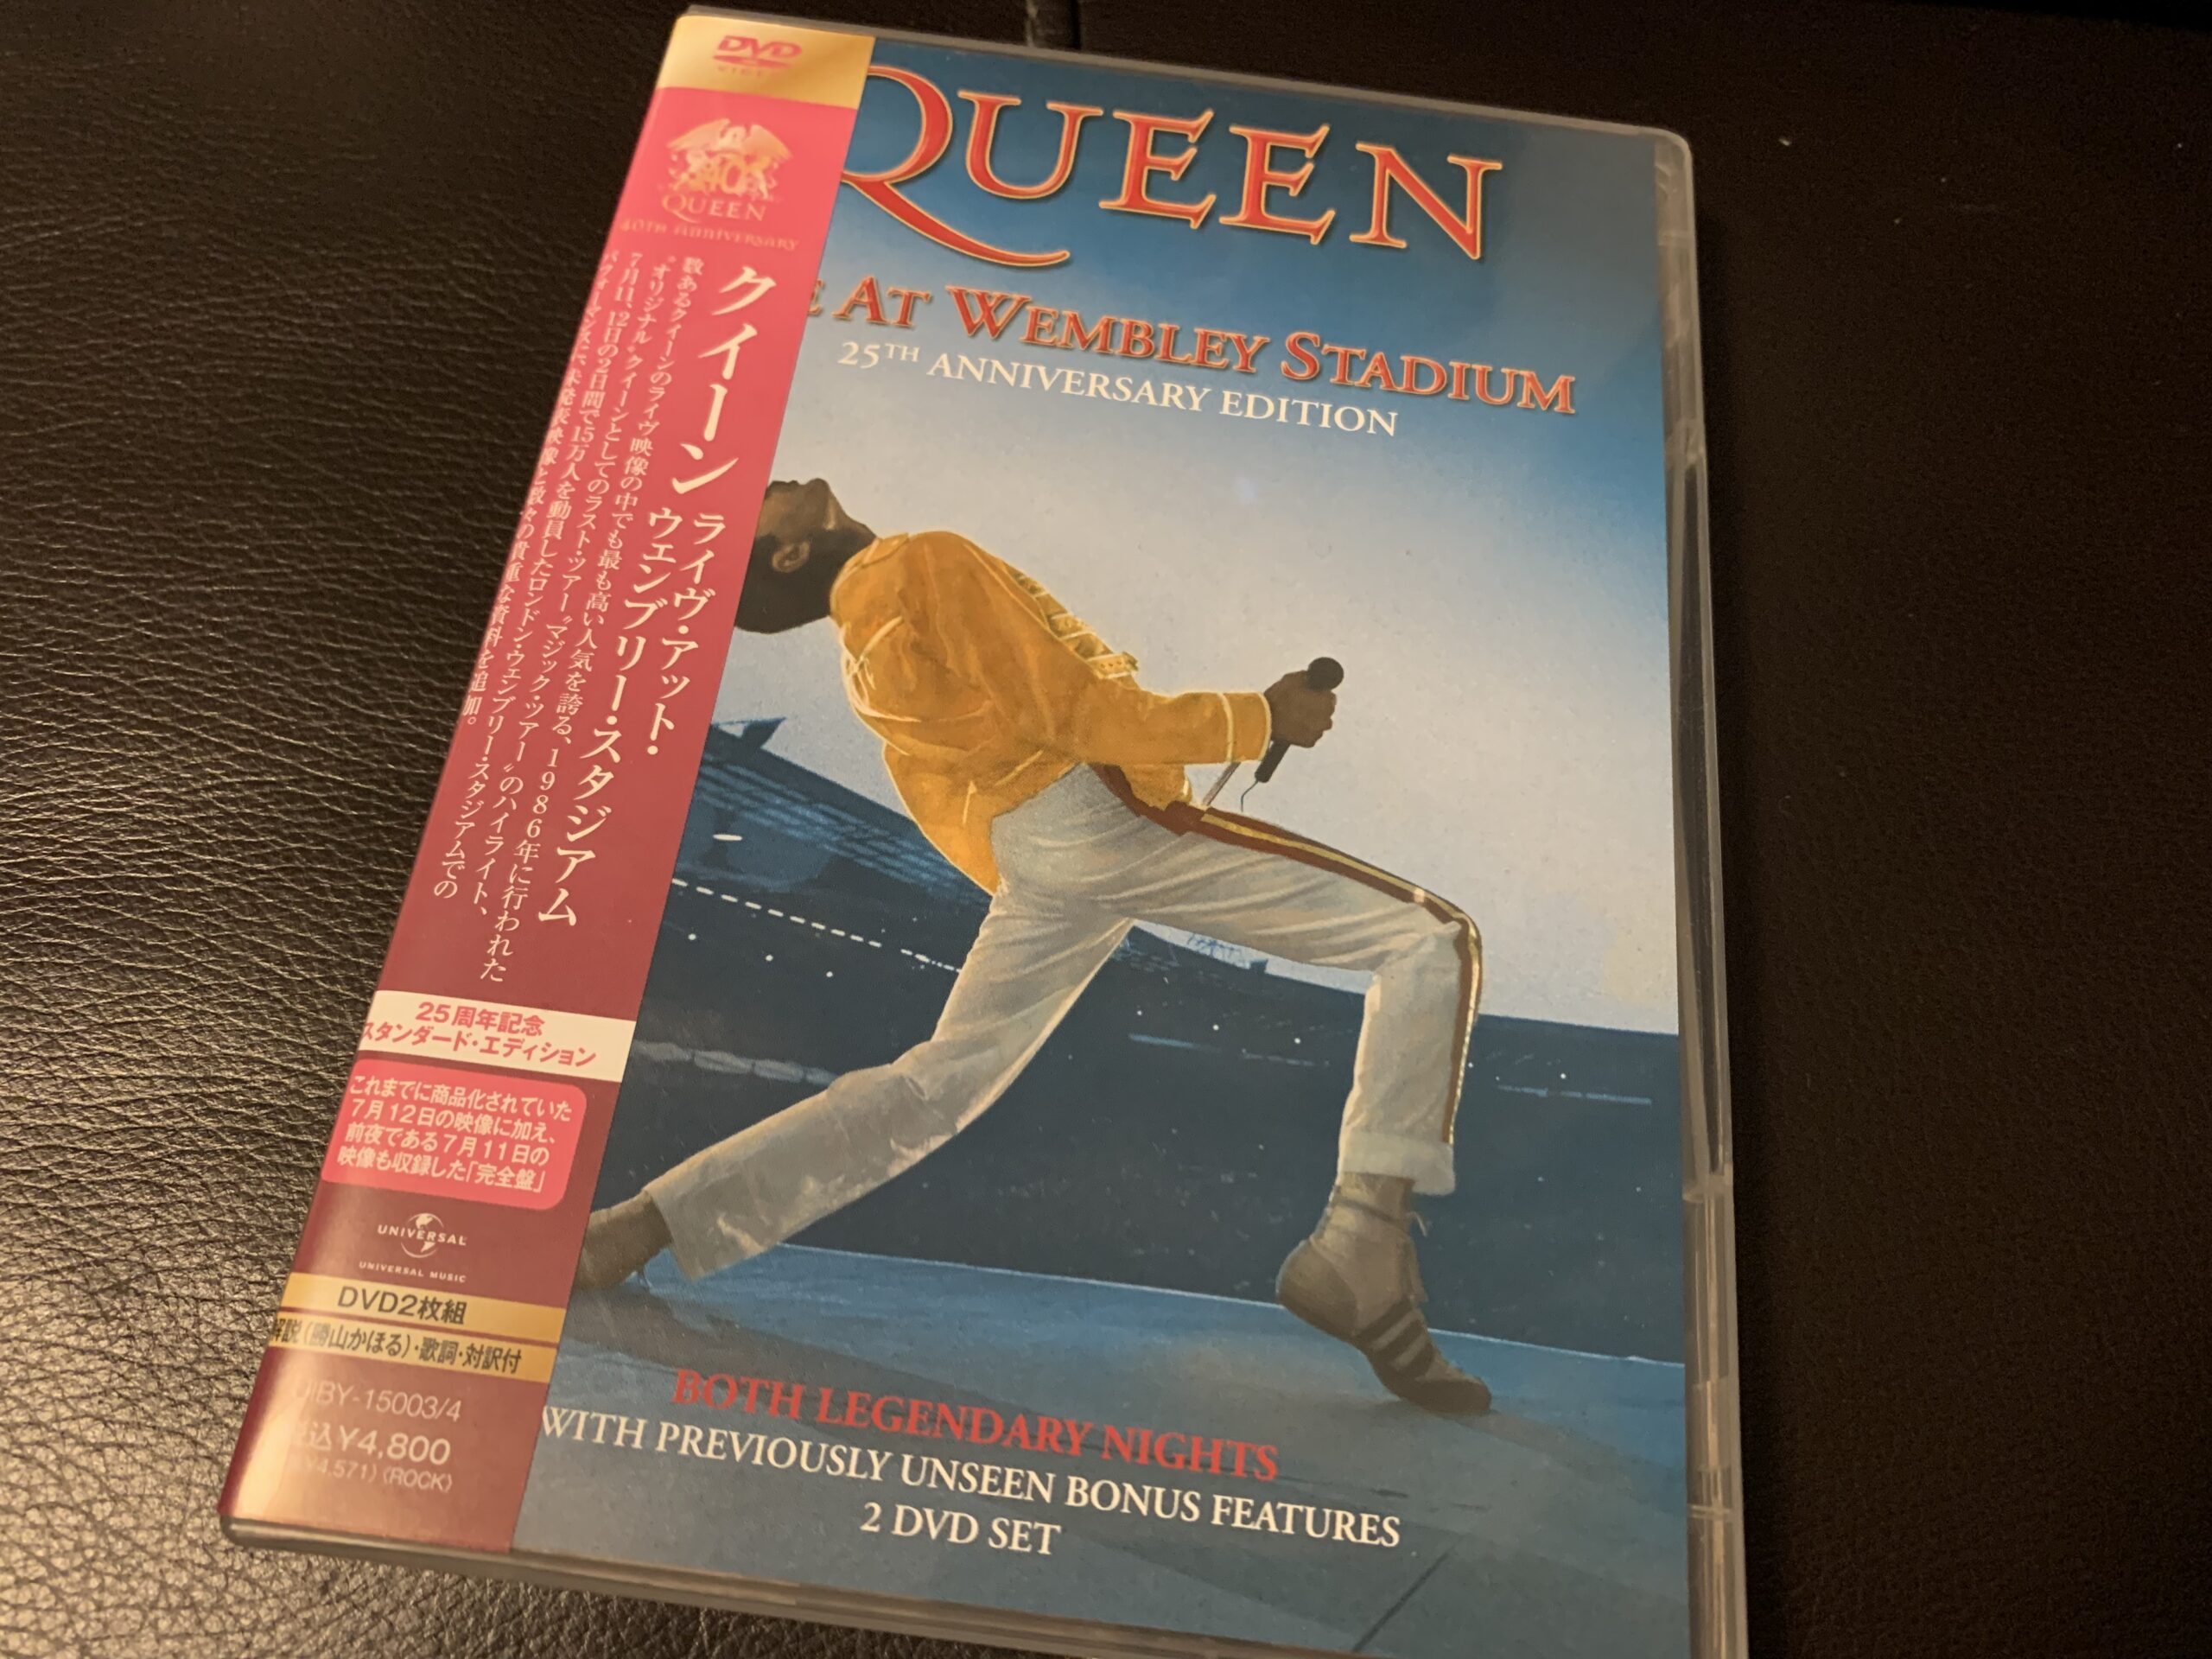 Queenの二枚組ライブDVD『Live At Wembley Stadium』を買った